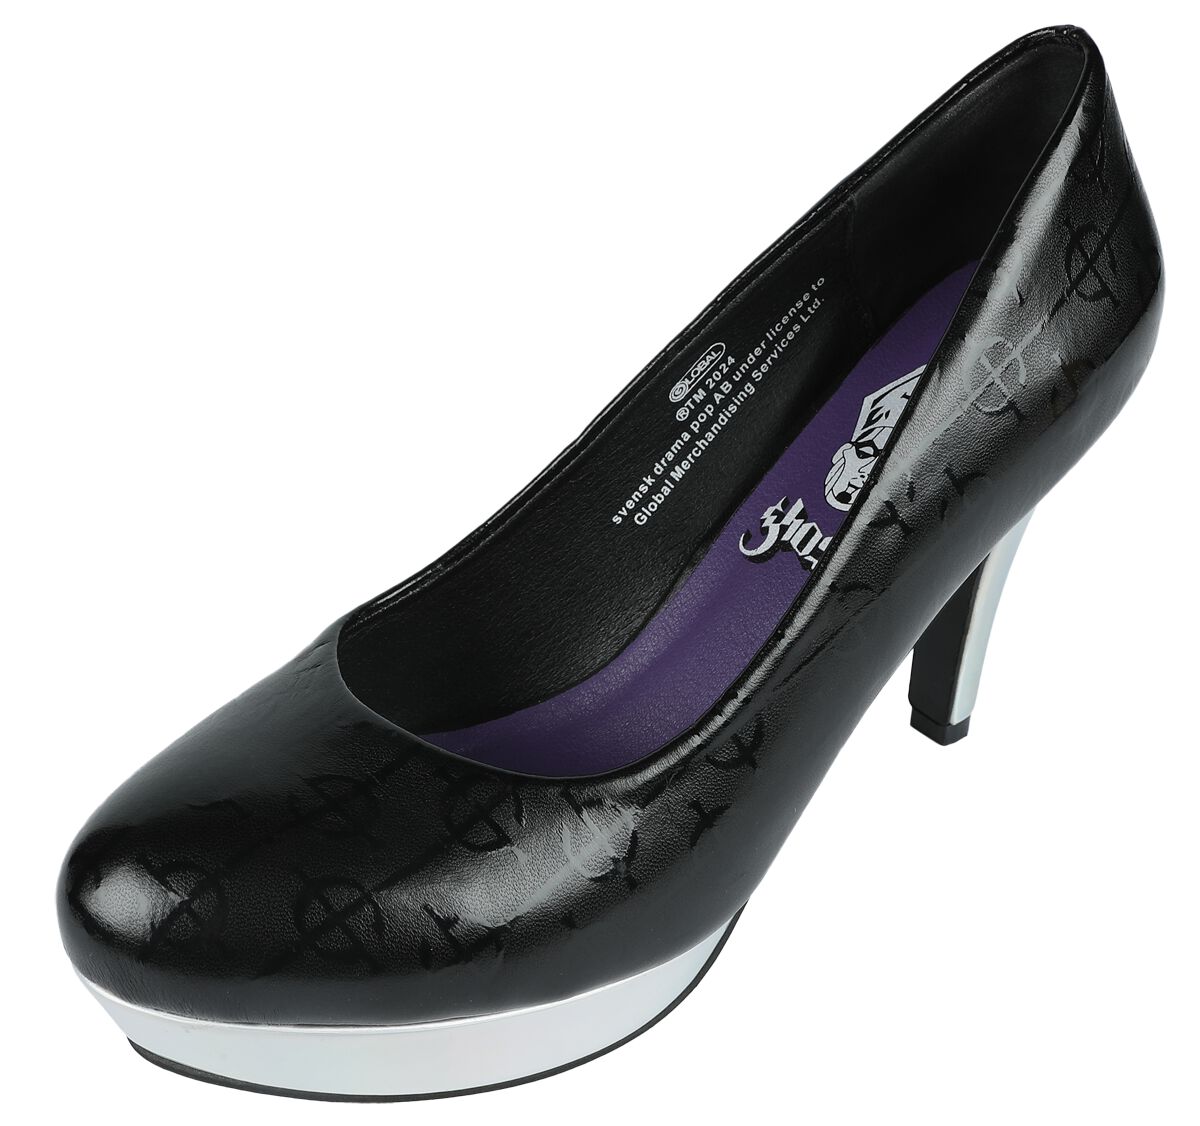 Ghost High Heel - EMP Signature Collection - EU37 bis EU41 - für Damen - Größe EU39 - schwarz/silberfarben  - EMP exklusives Merchandise!